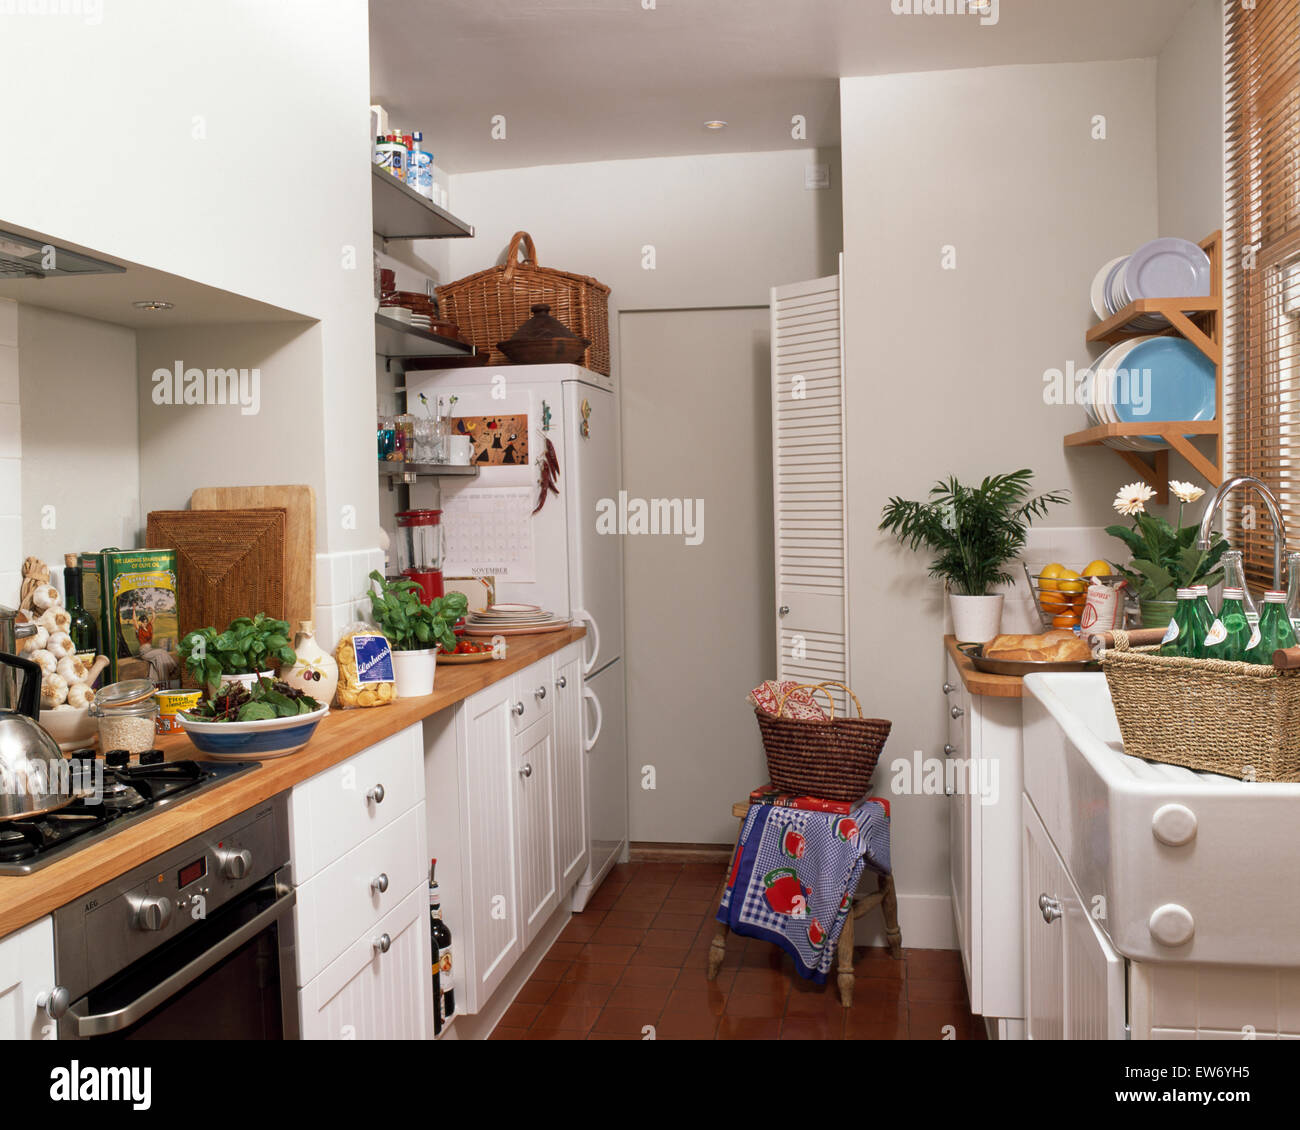 White economy style kitchen Stock Photo